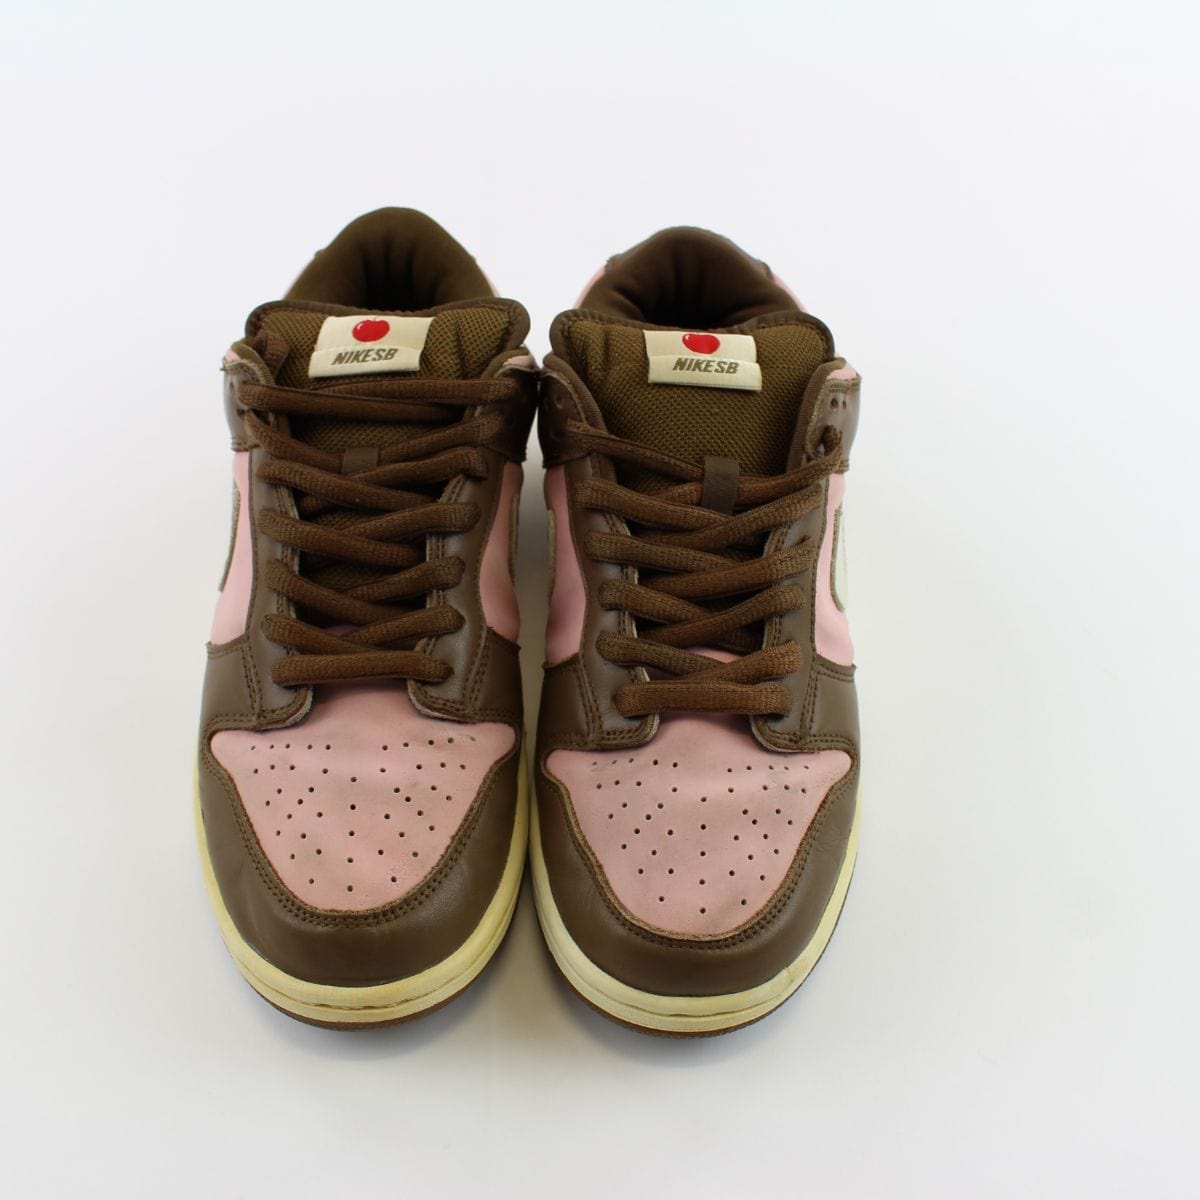 brown sneakers nike